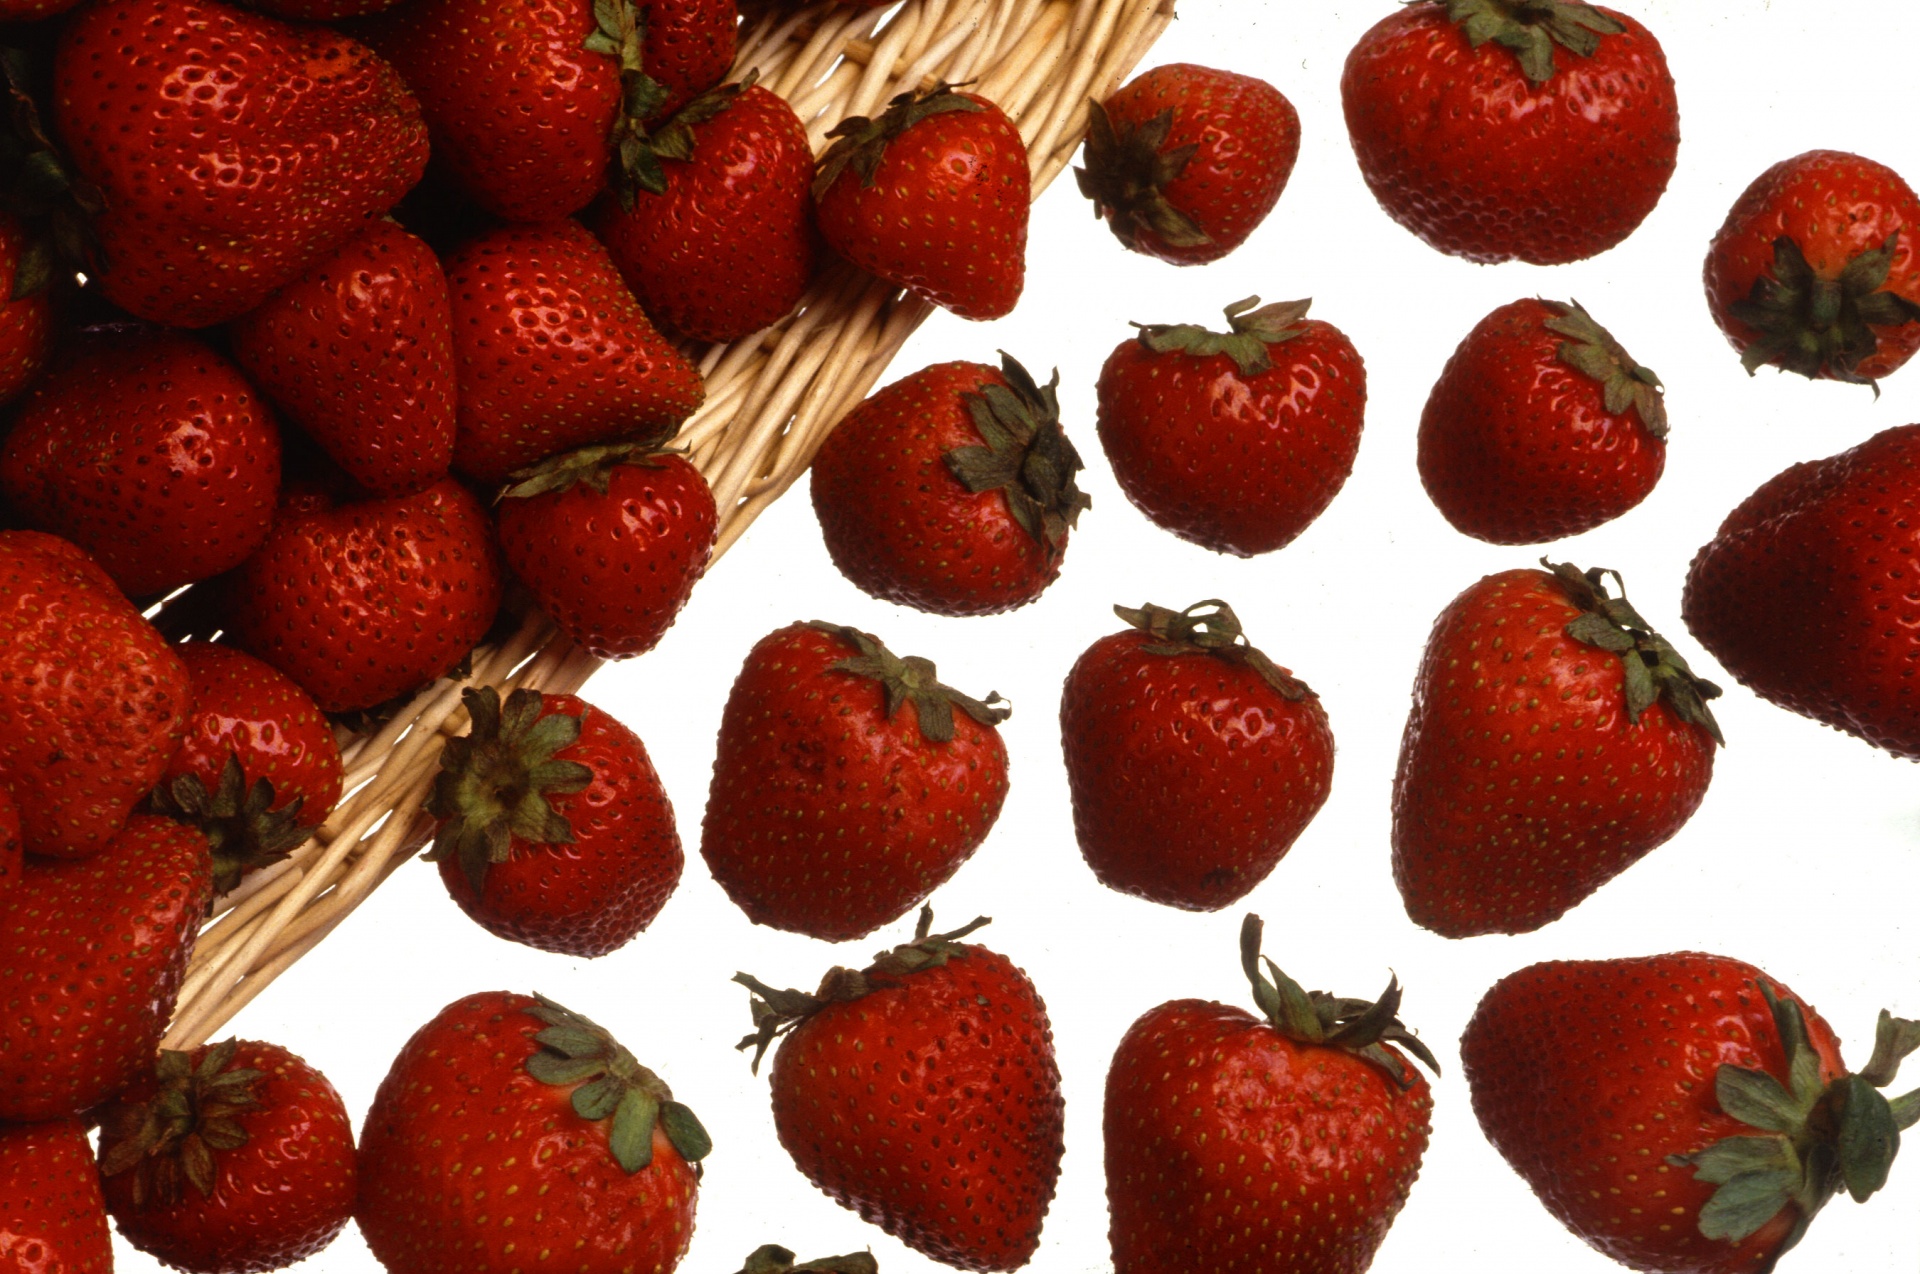 strawberries ripe fresh free photo